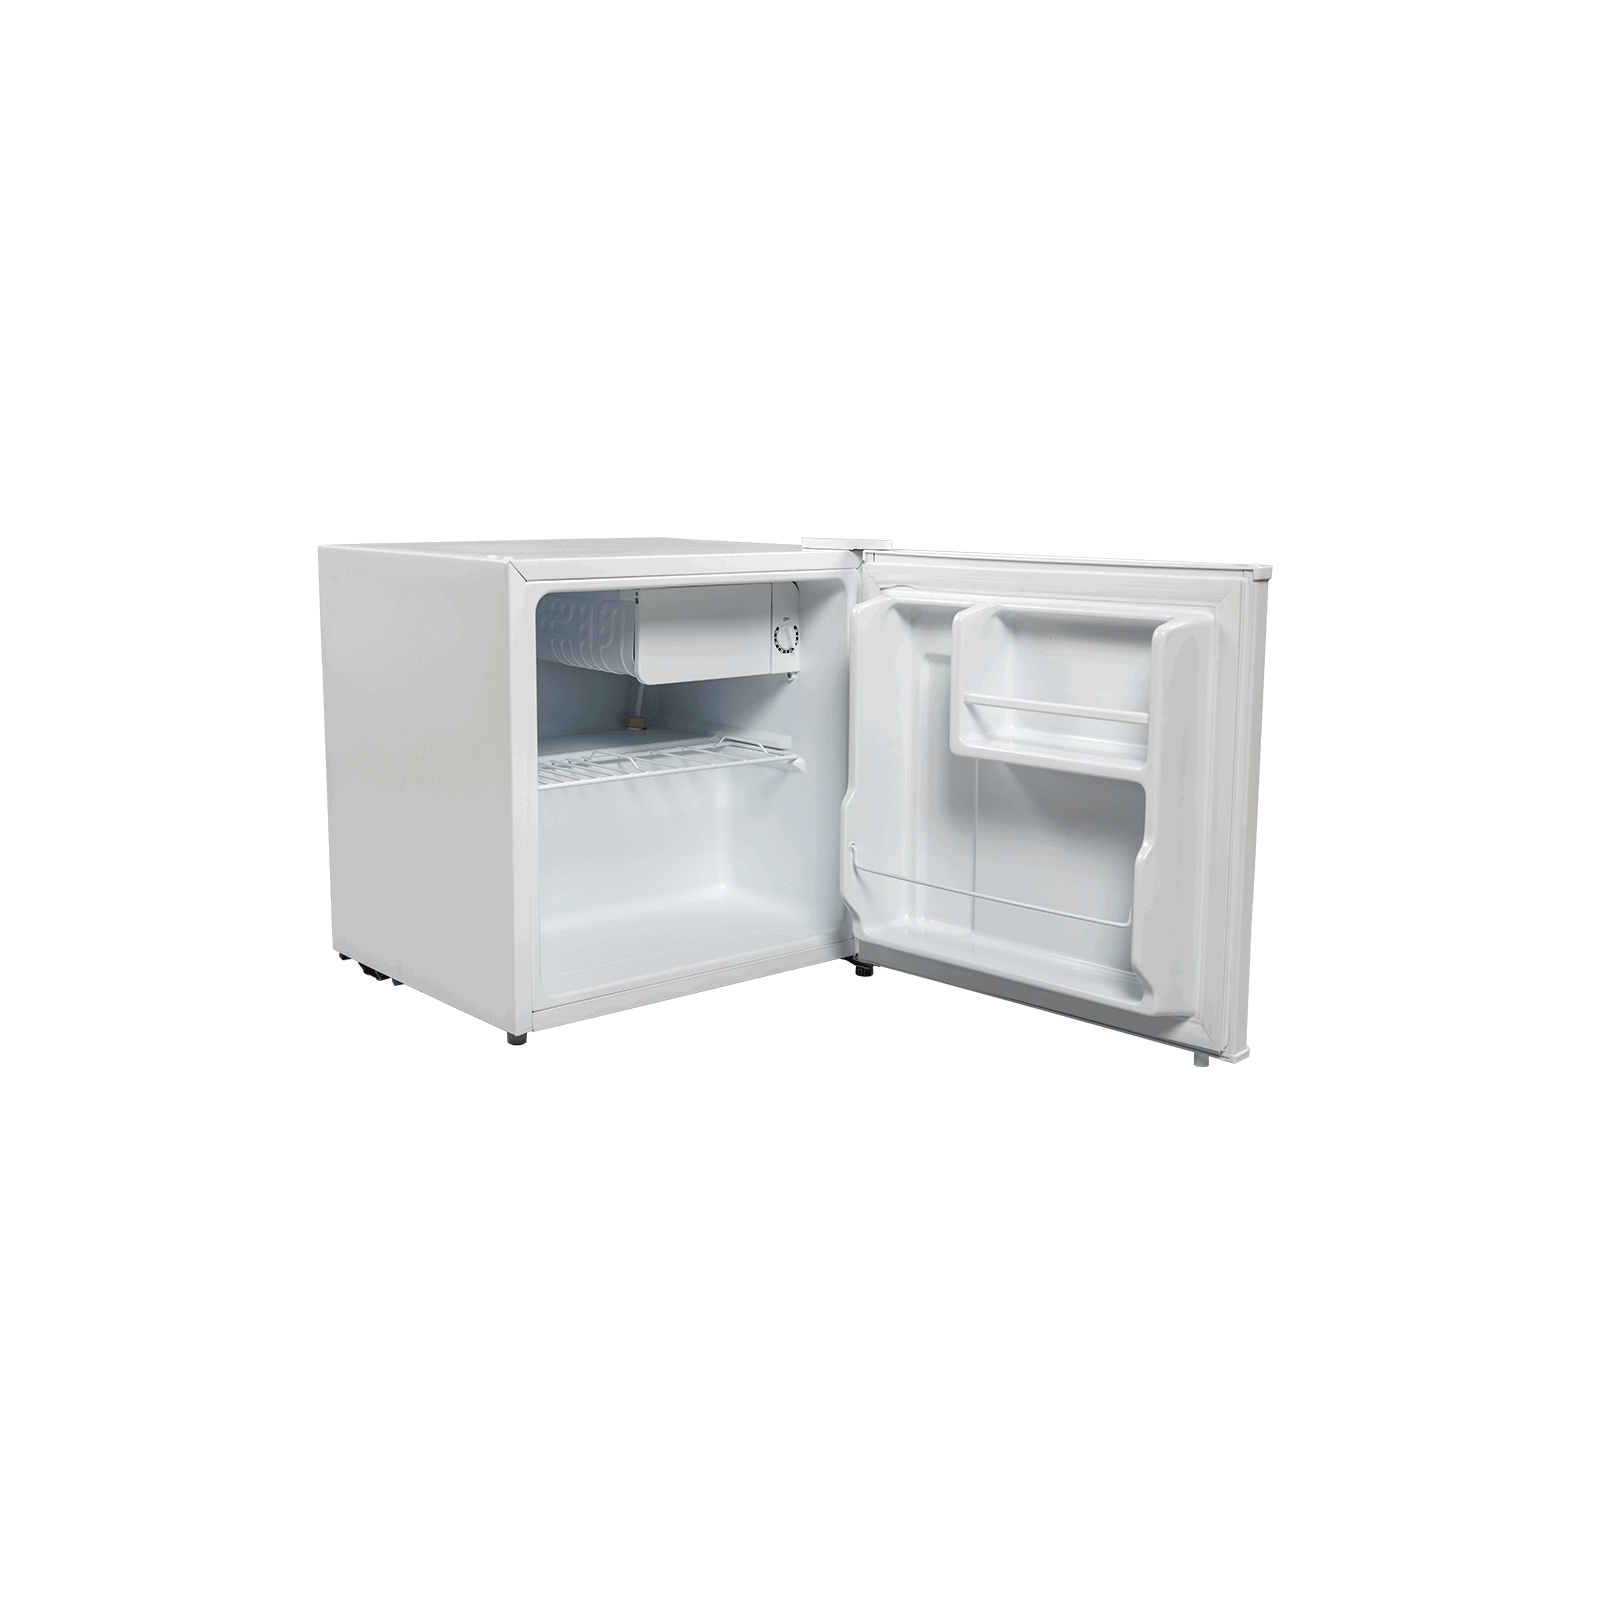 Холодильник Grunhelm VRH-S51M44-W зображення 2